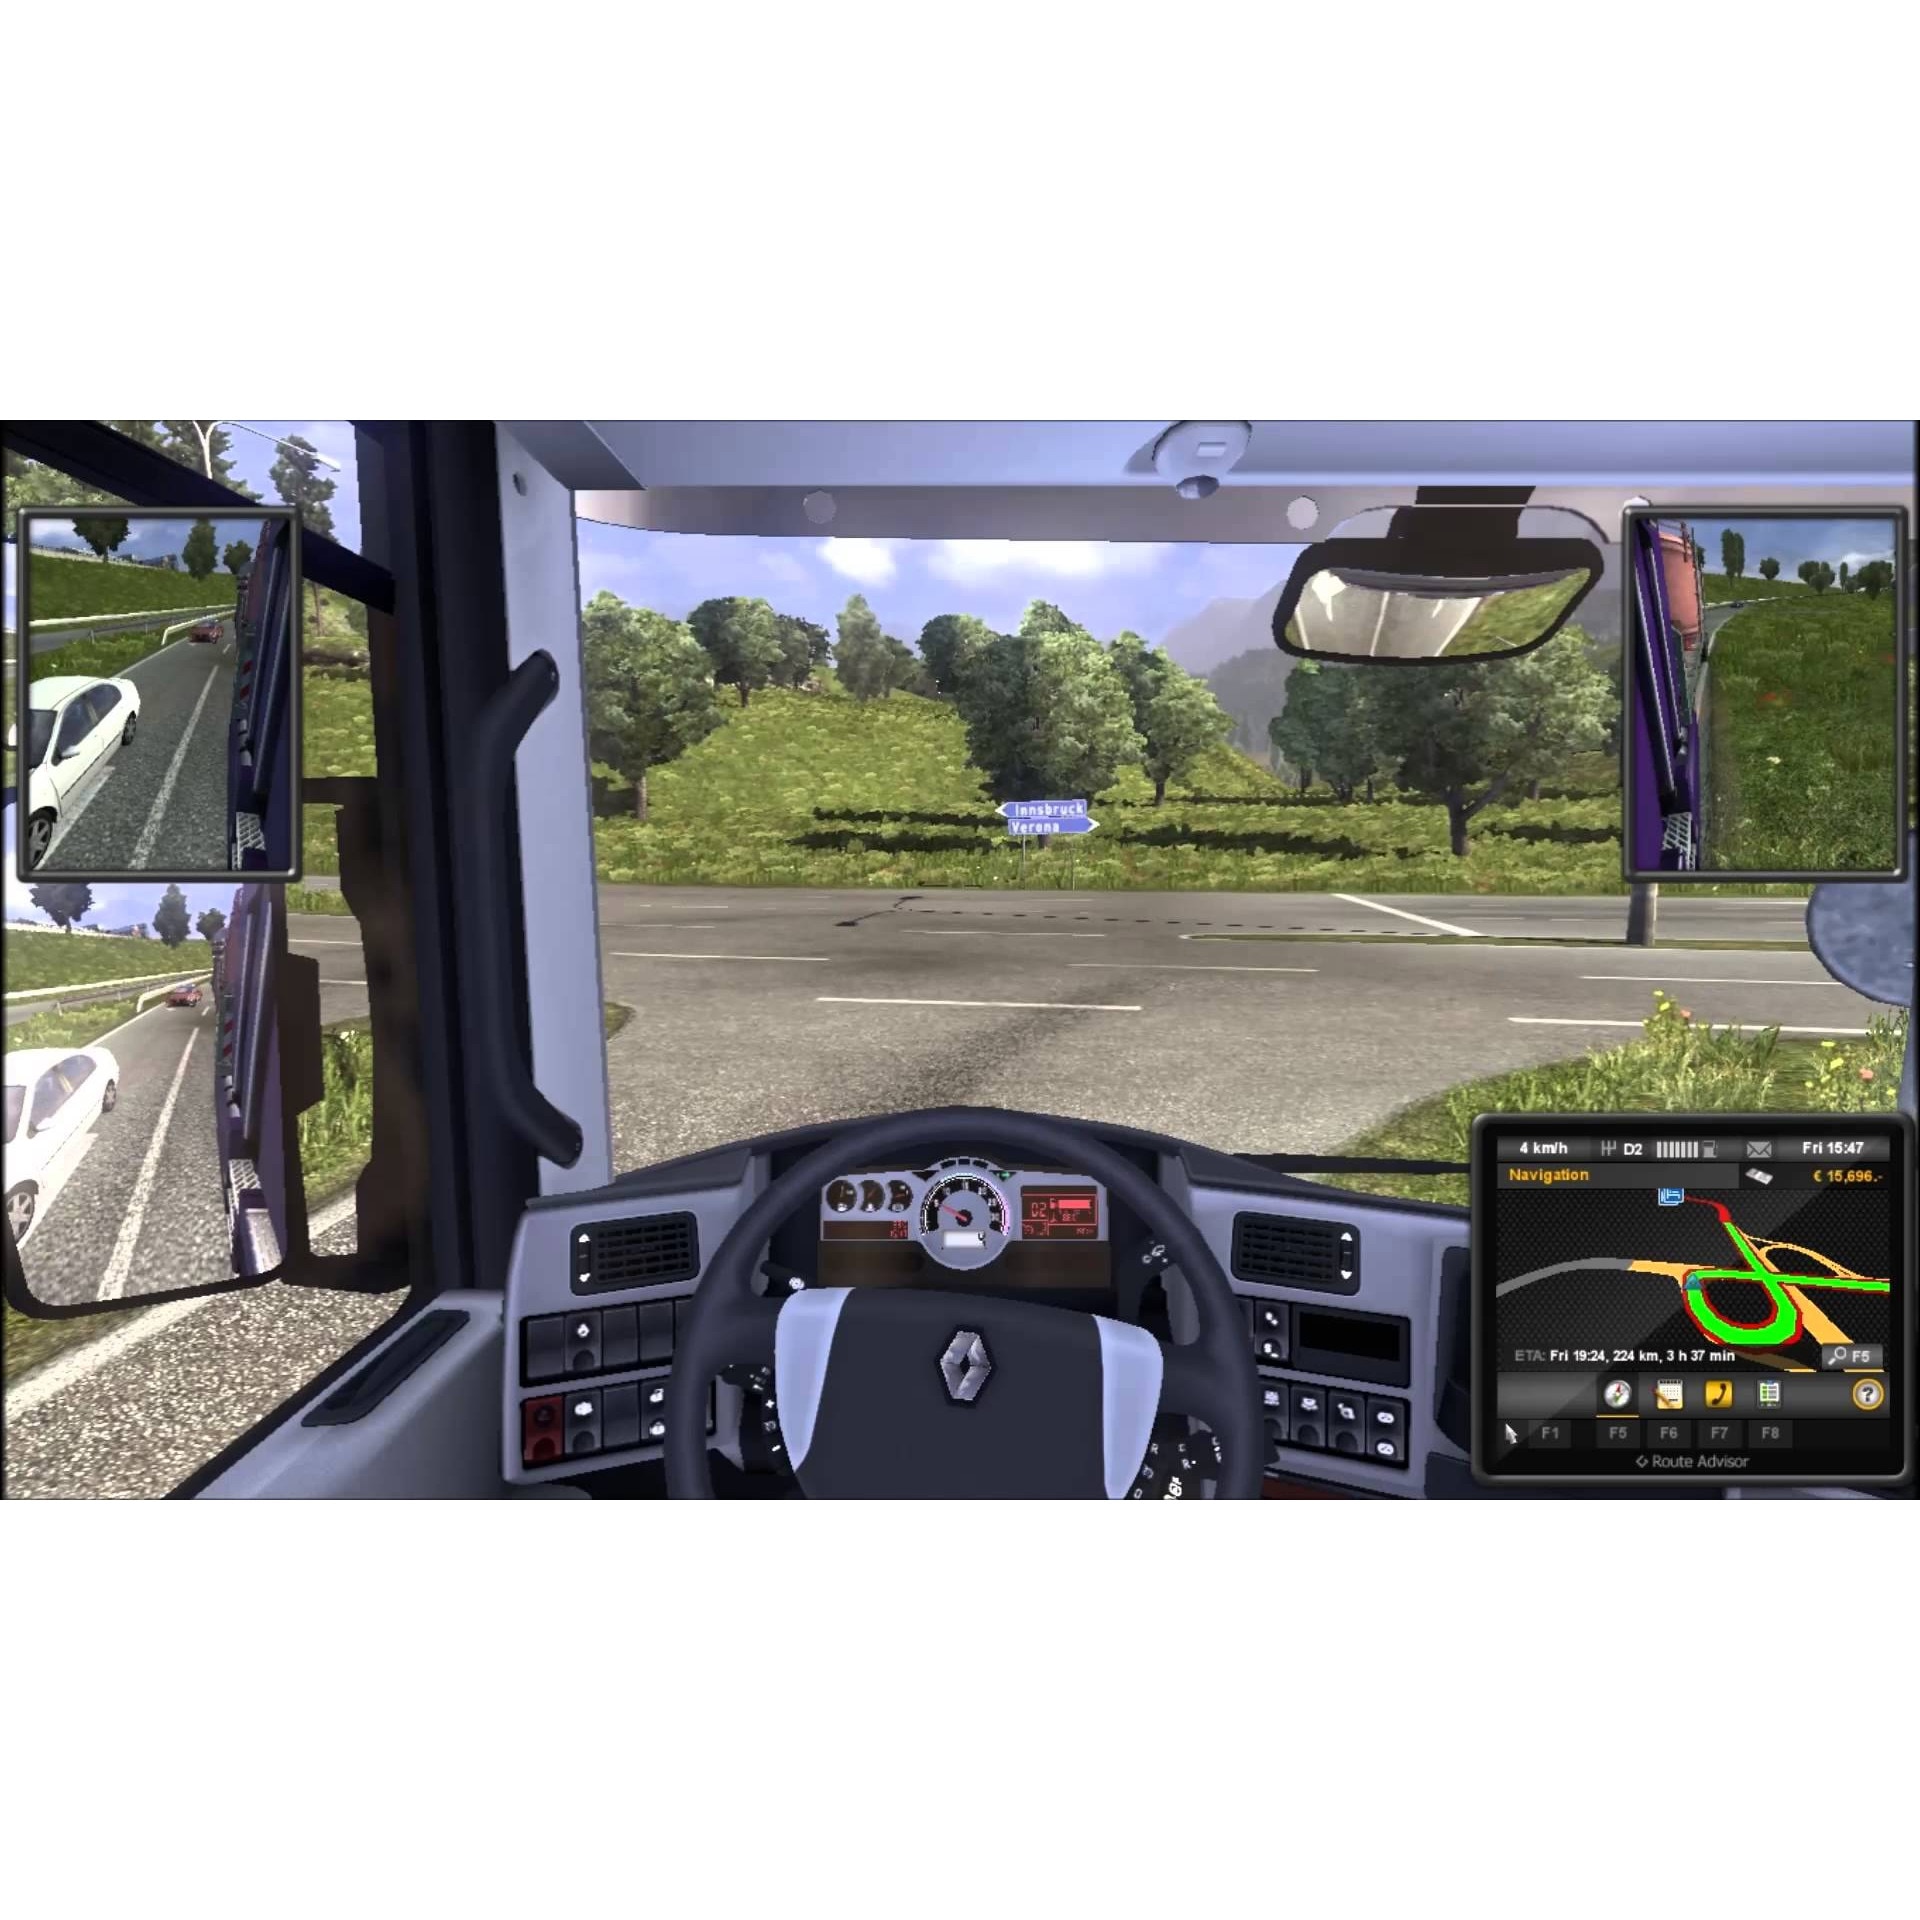 euro truck simulator 2 key in steam